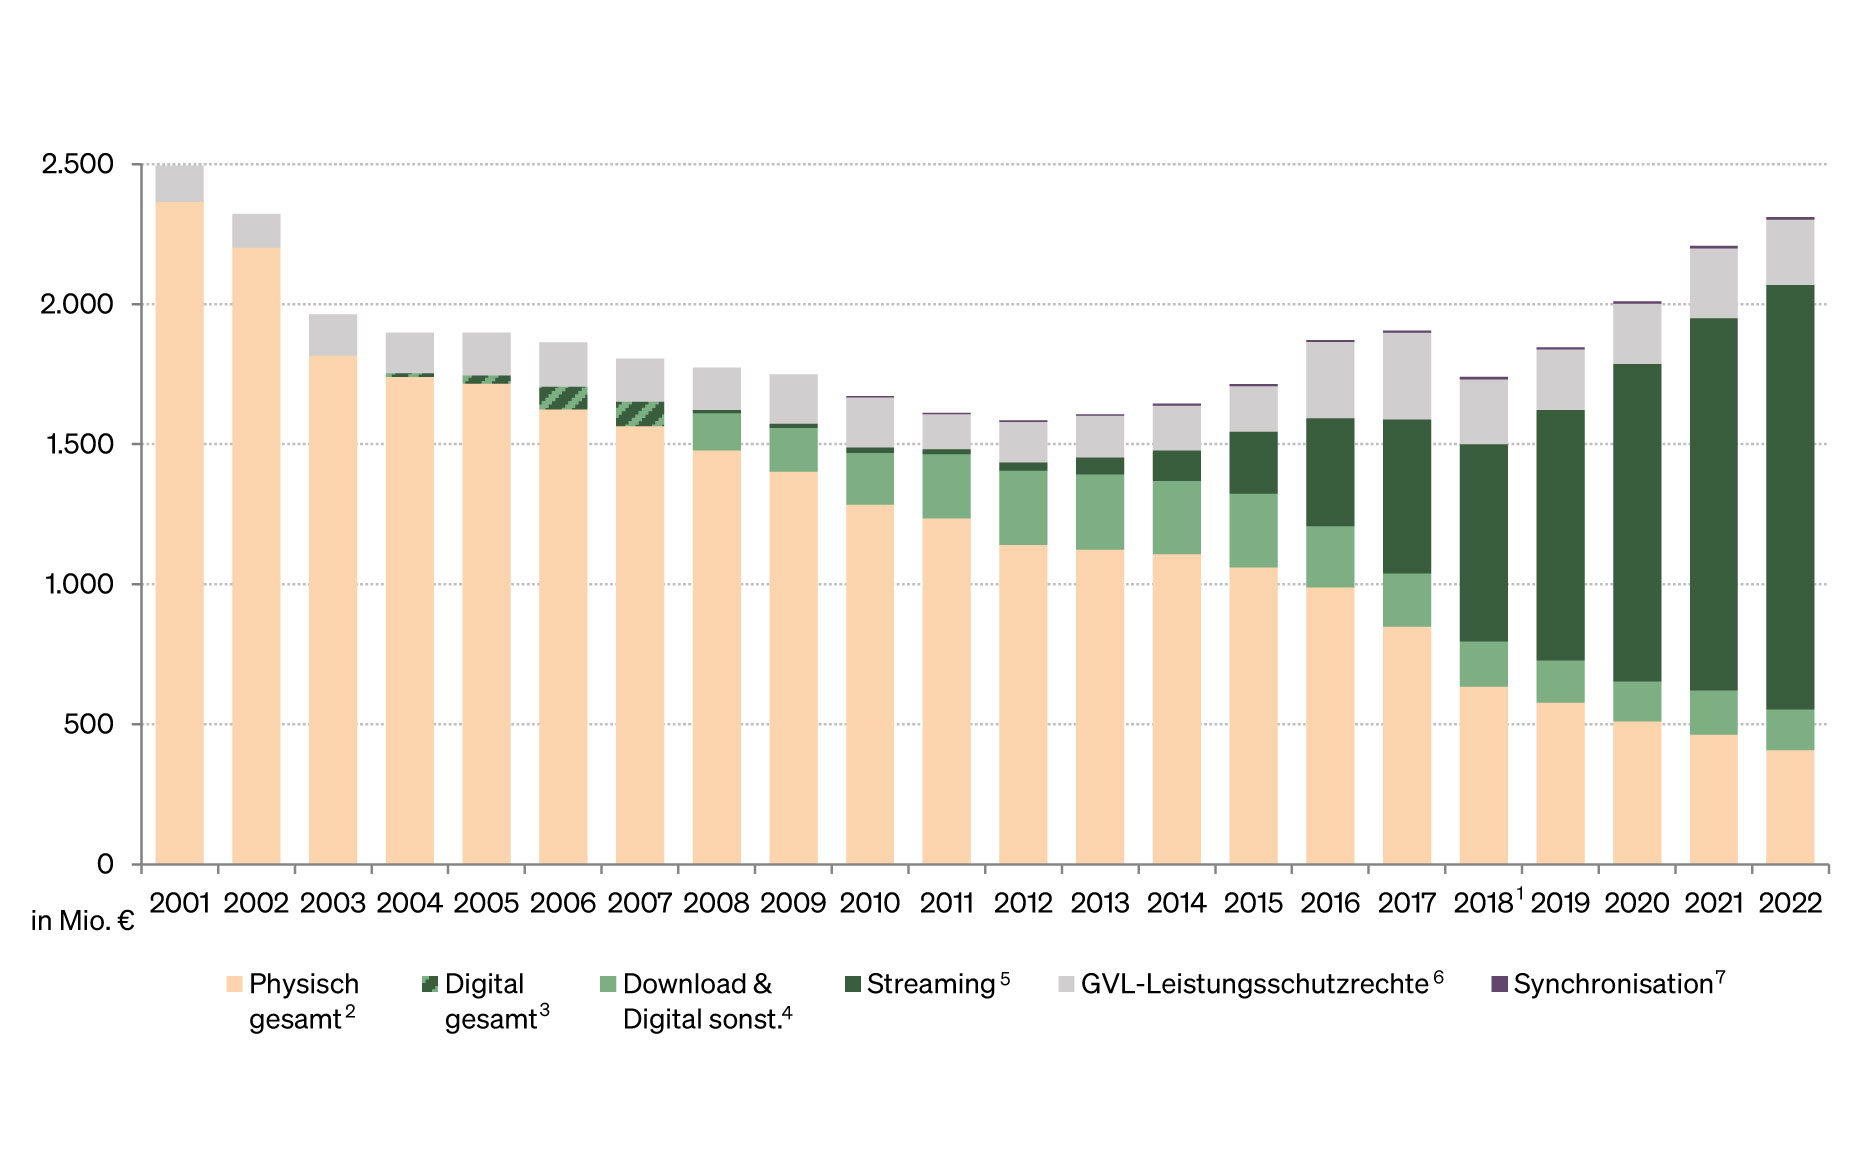 Abbildung: Entwicklung des Umsatzes in Deutschland 2001 bis 2022